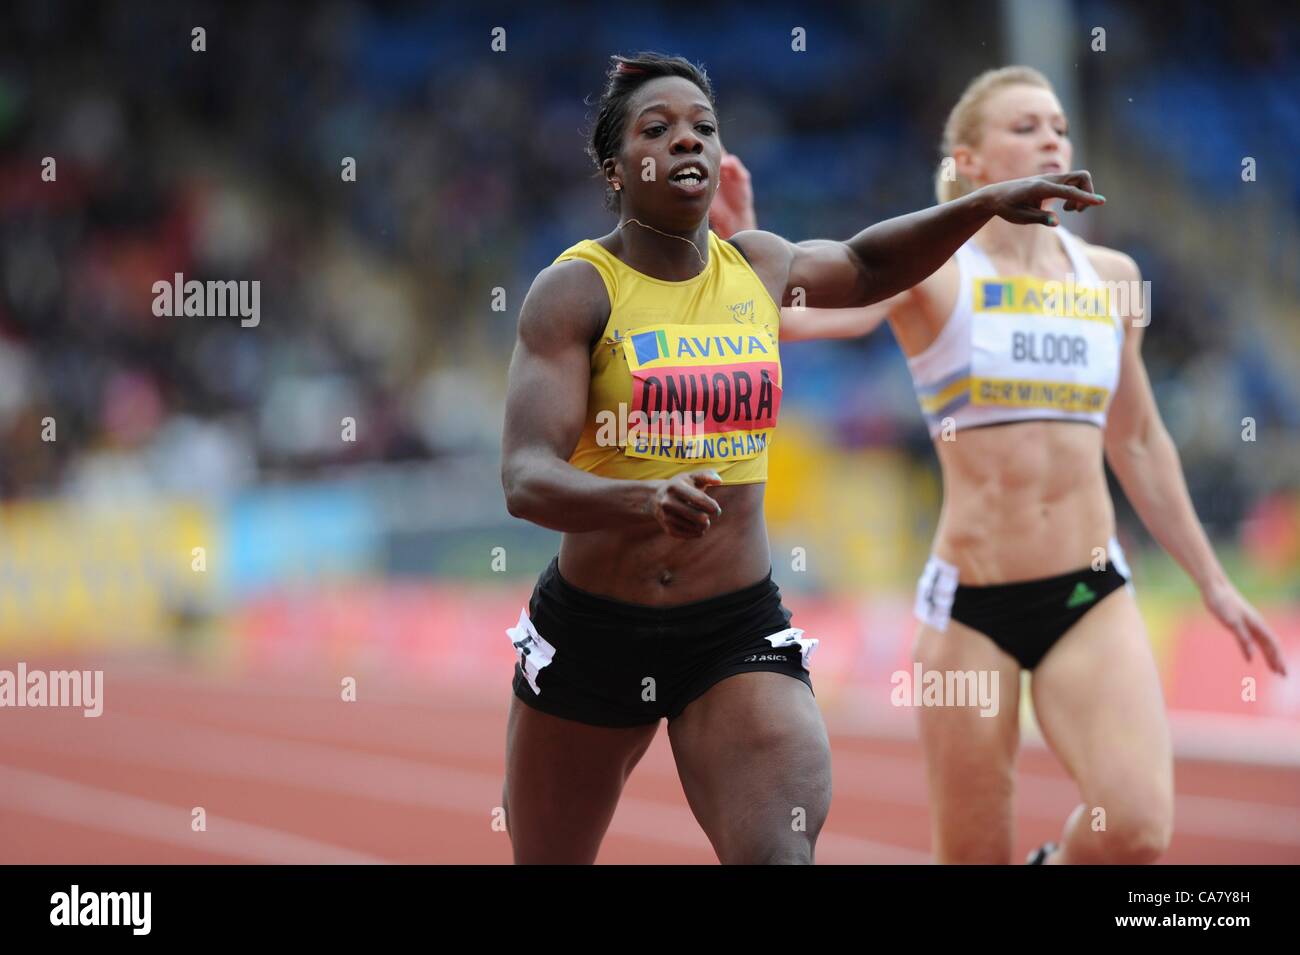 24.06.2012 Birmingham, ENGLAND Damen 200m-Finale, Anyika Onuora in Aktion während der Aviva-Versuche im Alexandra Stadium. Stockfoto